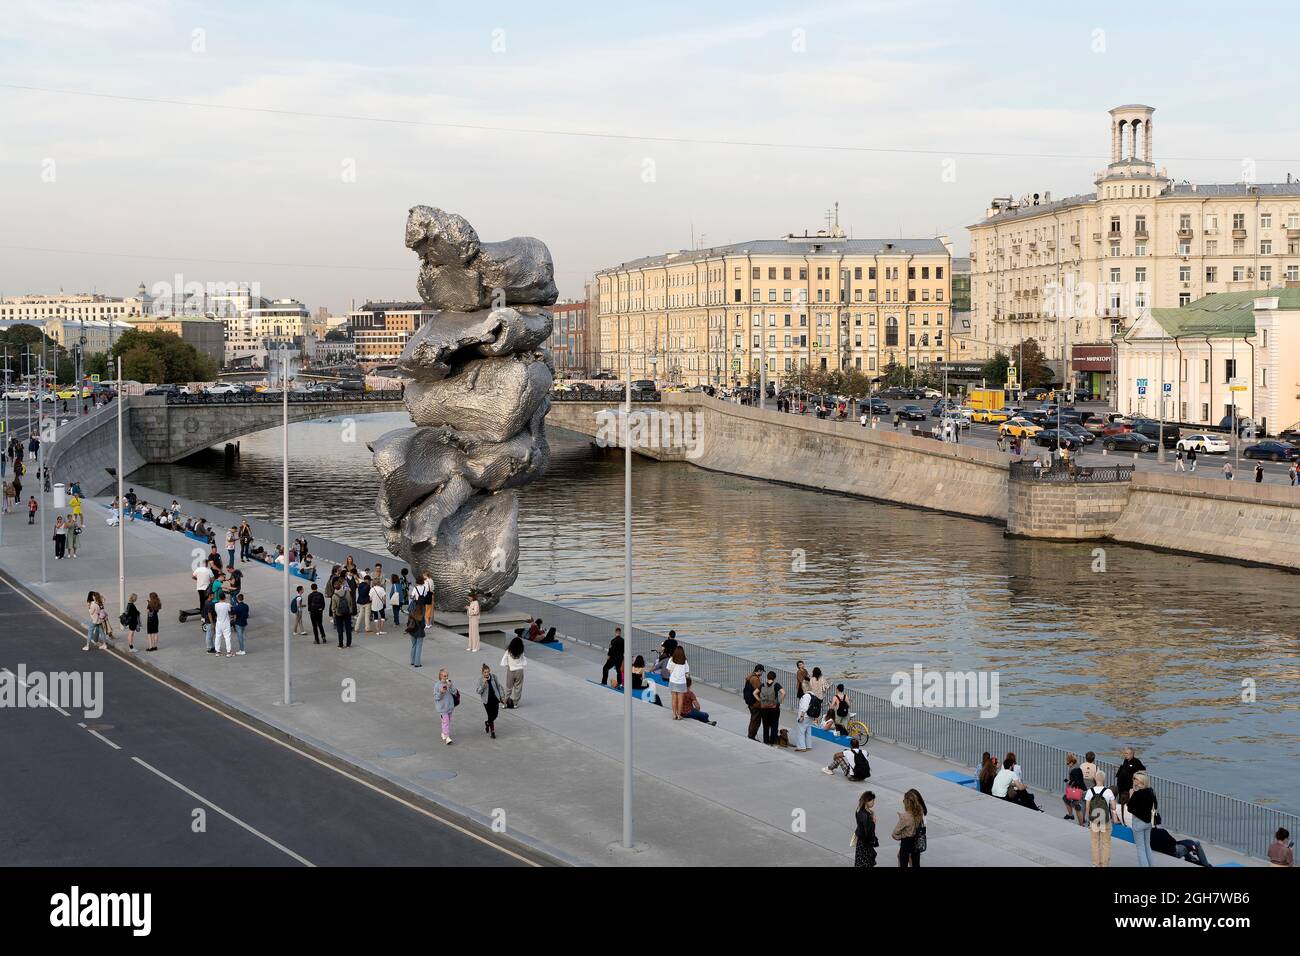 Moskau, Russland - 31. August 2021: Skulptur von Urs Fischer Big Clay 4 auf dem Bolotnaja-Damm in Moskau. Stadtbild und Böschung mit Urlaubern im Sommer. Hochwertige Fotos Stockfoto